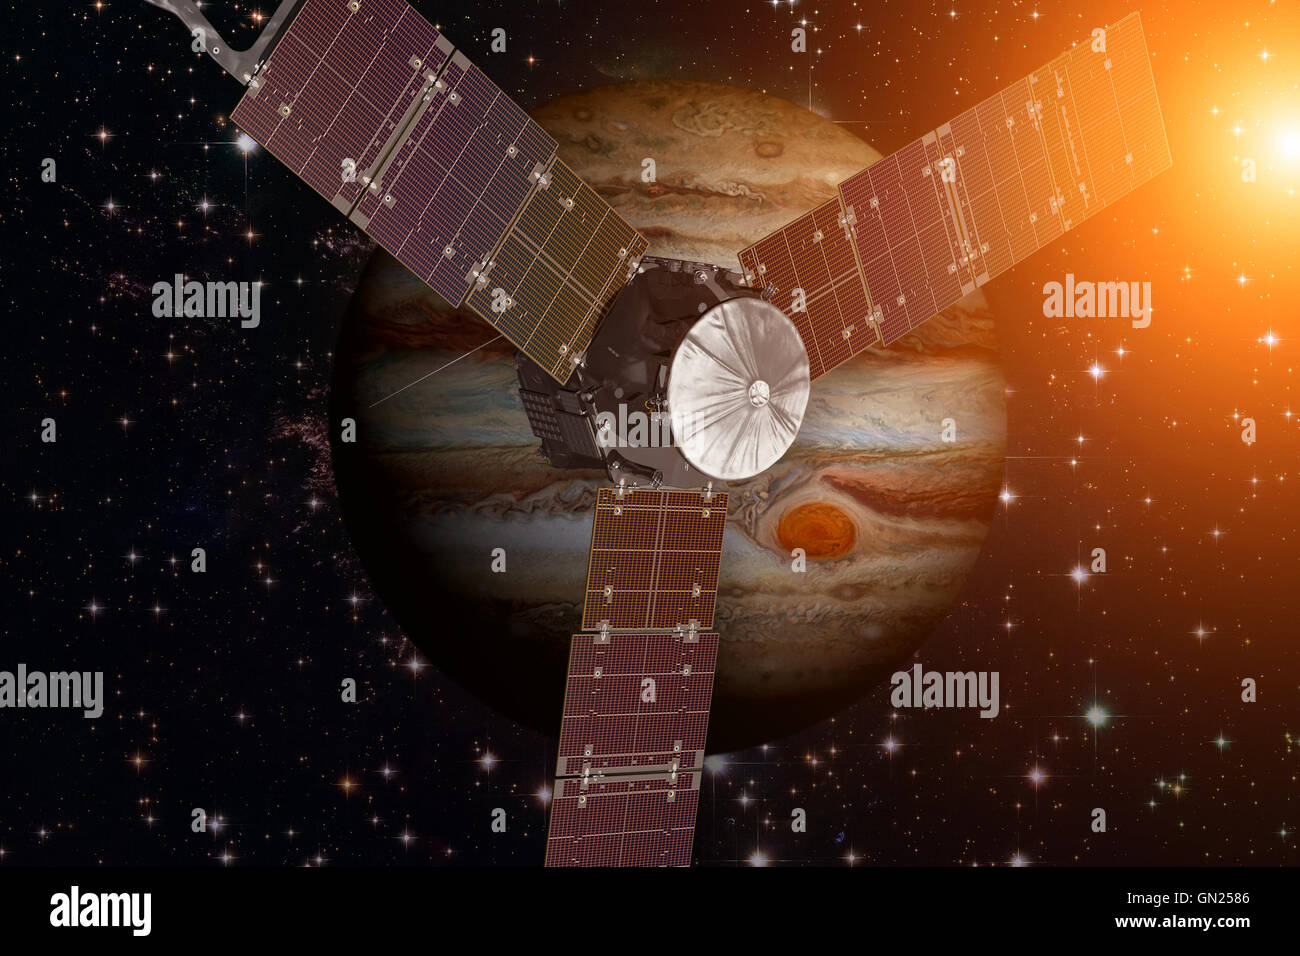 Raumsonde Juno und Jupiter. Elemente des Bildes von der NASA eingerichtet. Stockfoto